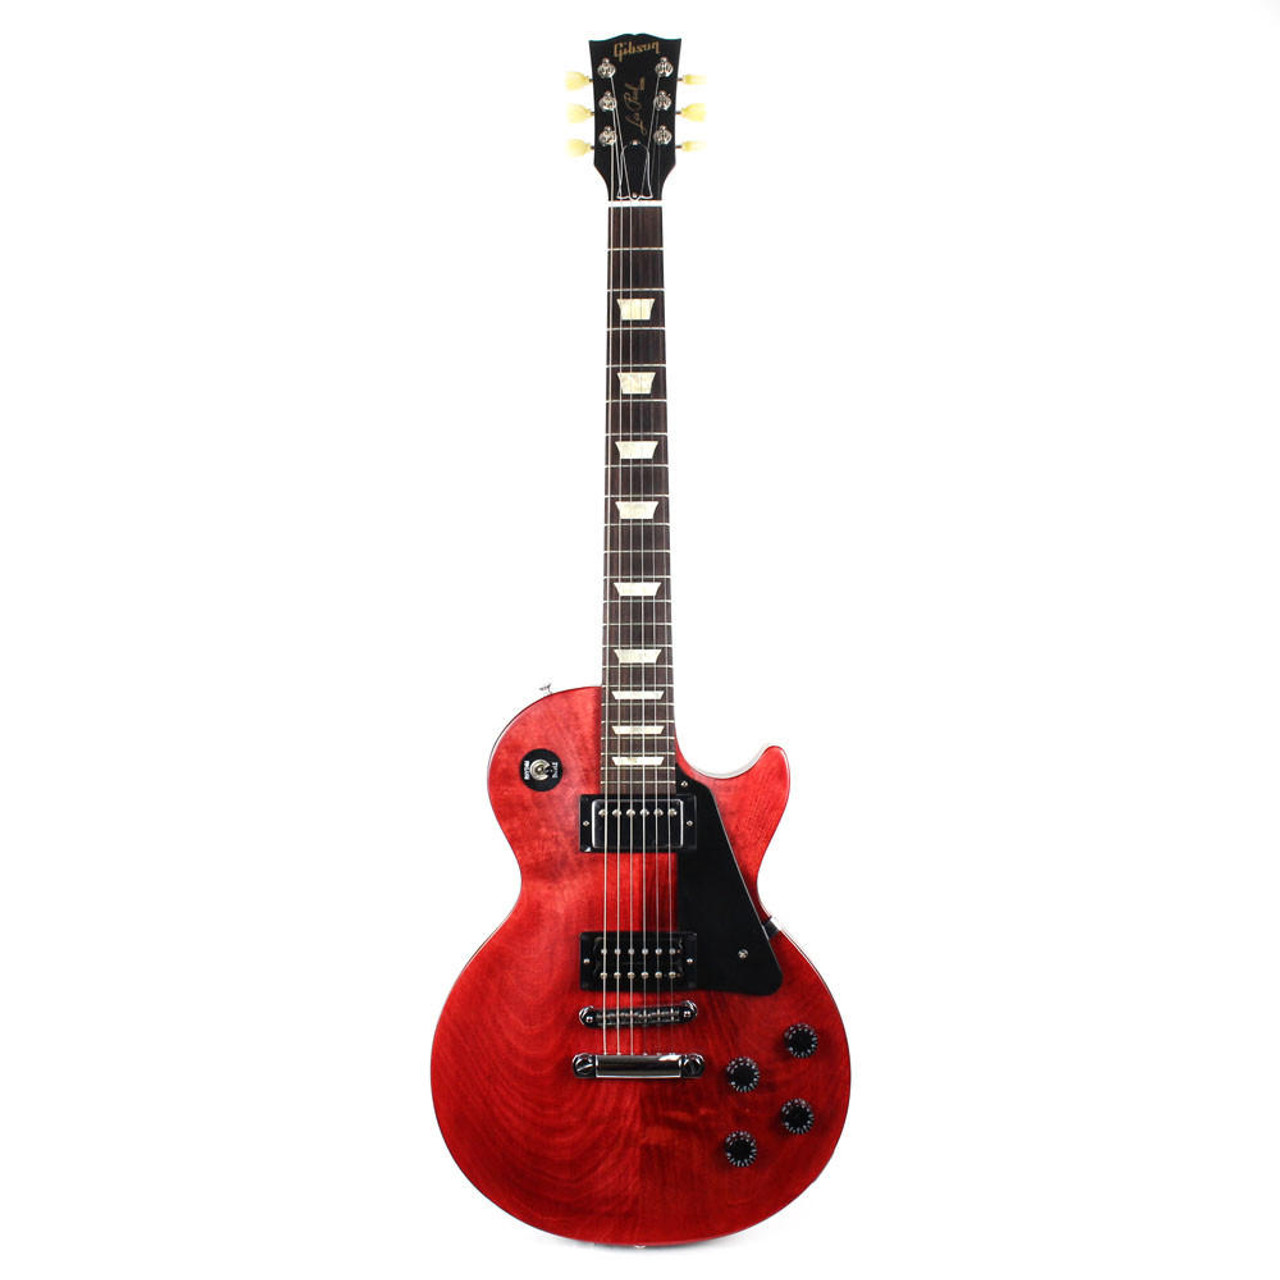 数量限定価格!! エレキギター Gibson faded 2011 studio lespaul gibson - エレキギター -  daloon.com